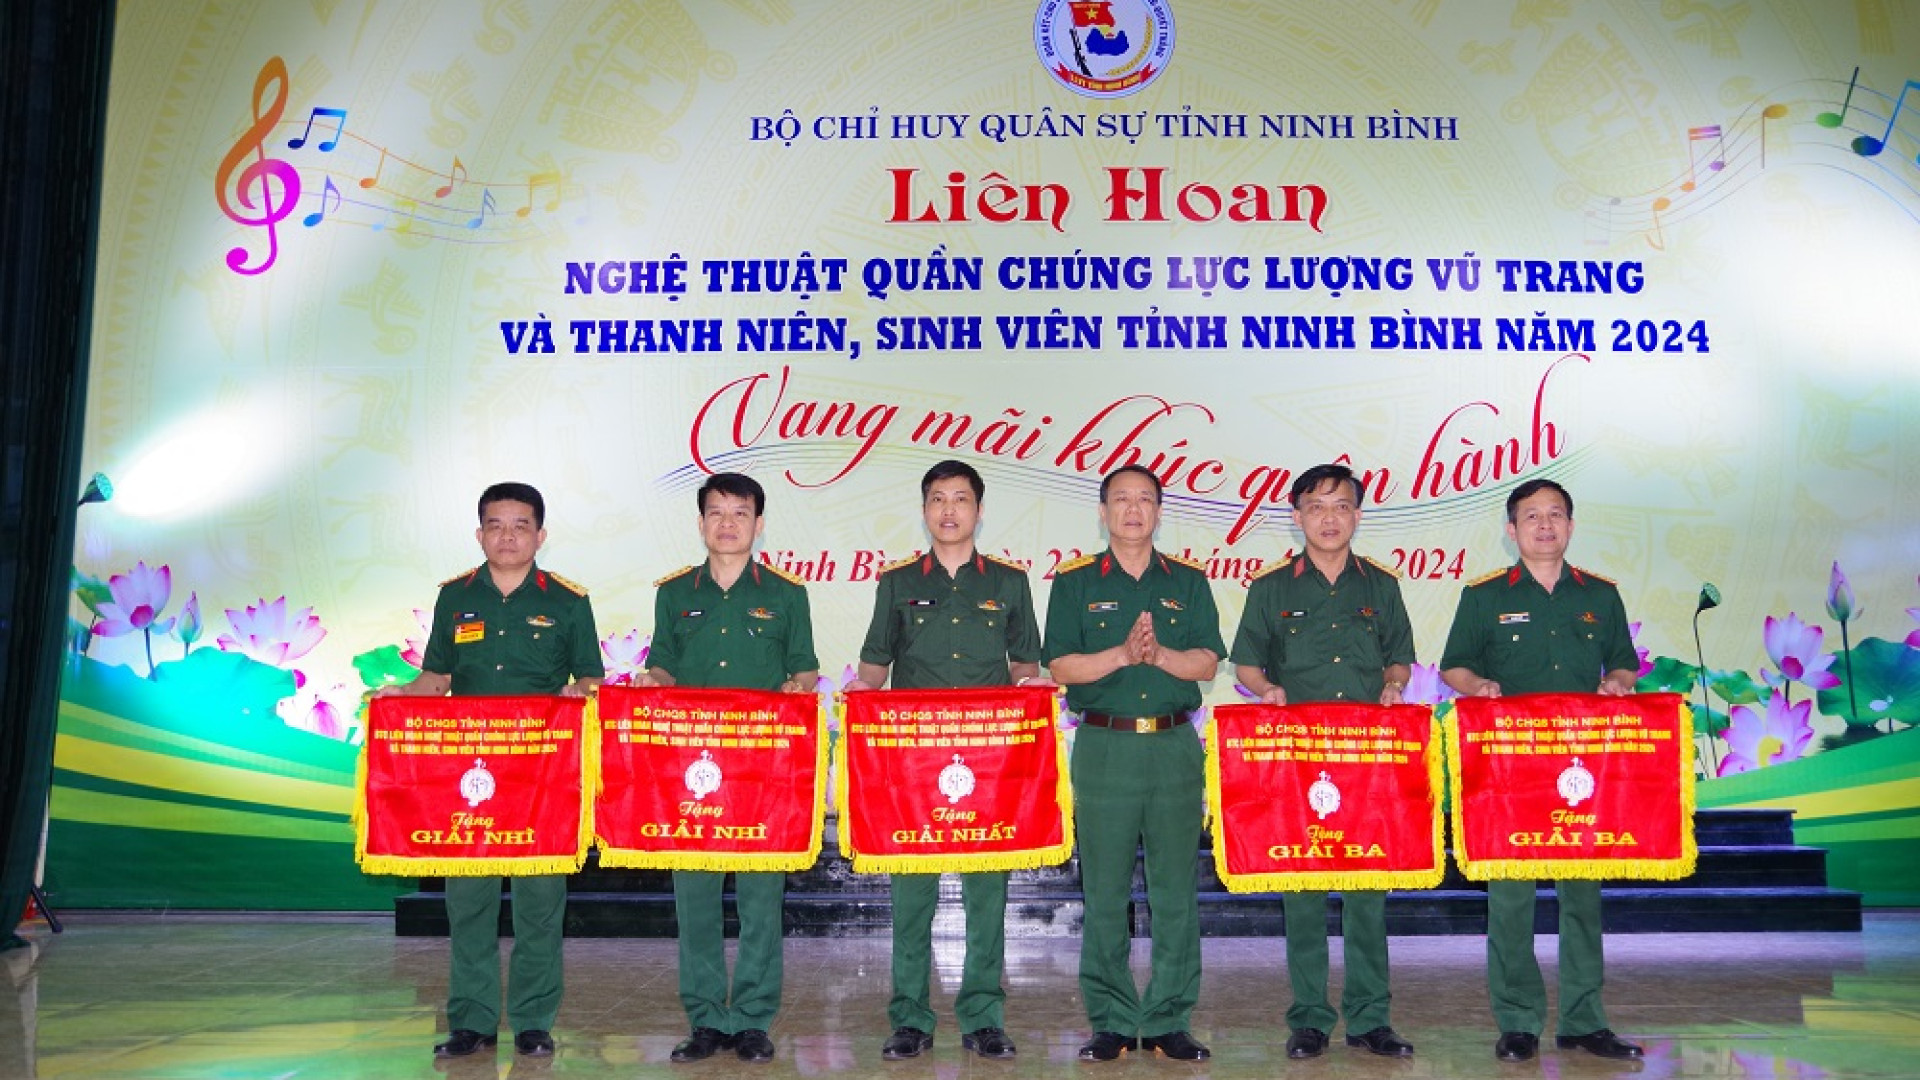 Bộ CHQS tỉnh Ninh Bình tổ chức thành công Liên hoan nghệ thuật quần chúng LLVT và thanh niên, sinh viên năm 2024